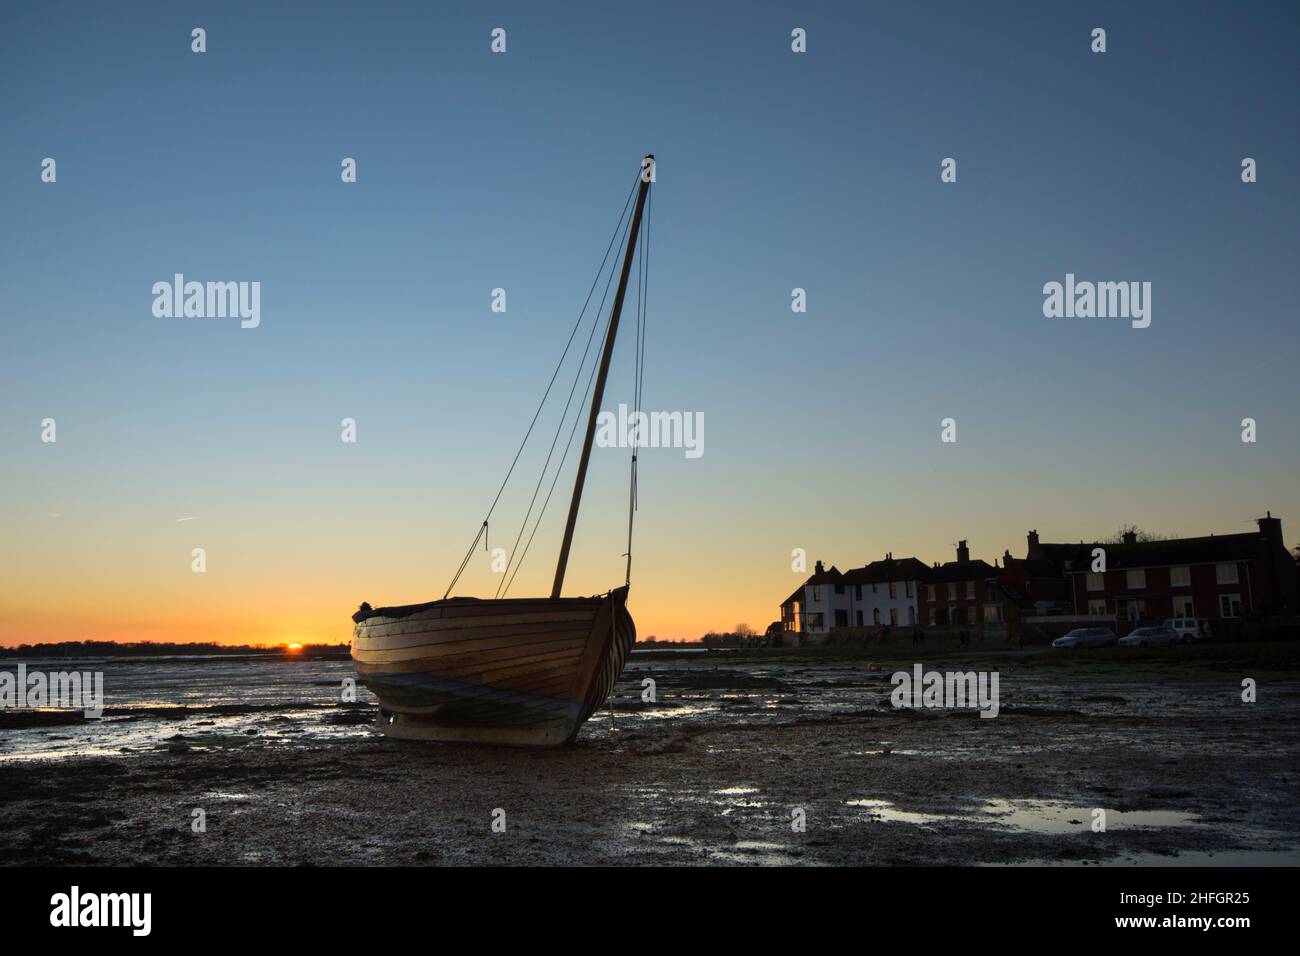 Bosham, Hafen von Bosham, mit Holzyacht, die auf dem Rumpf neben Dorfhäusern ruht, Sonnenuntergang, Dämmerung, Gezeiten, Sussex, Großbritannien, Januar. Stockfoto